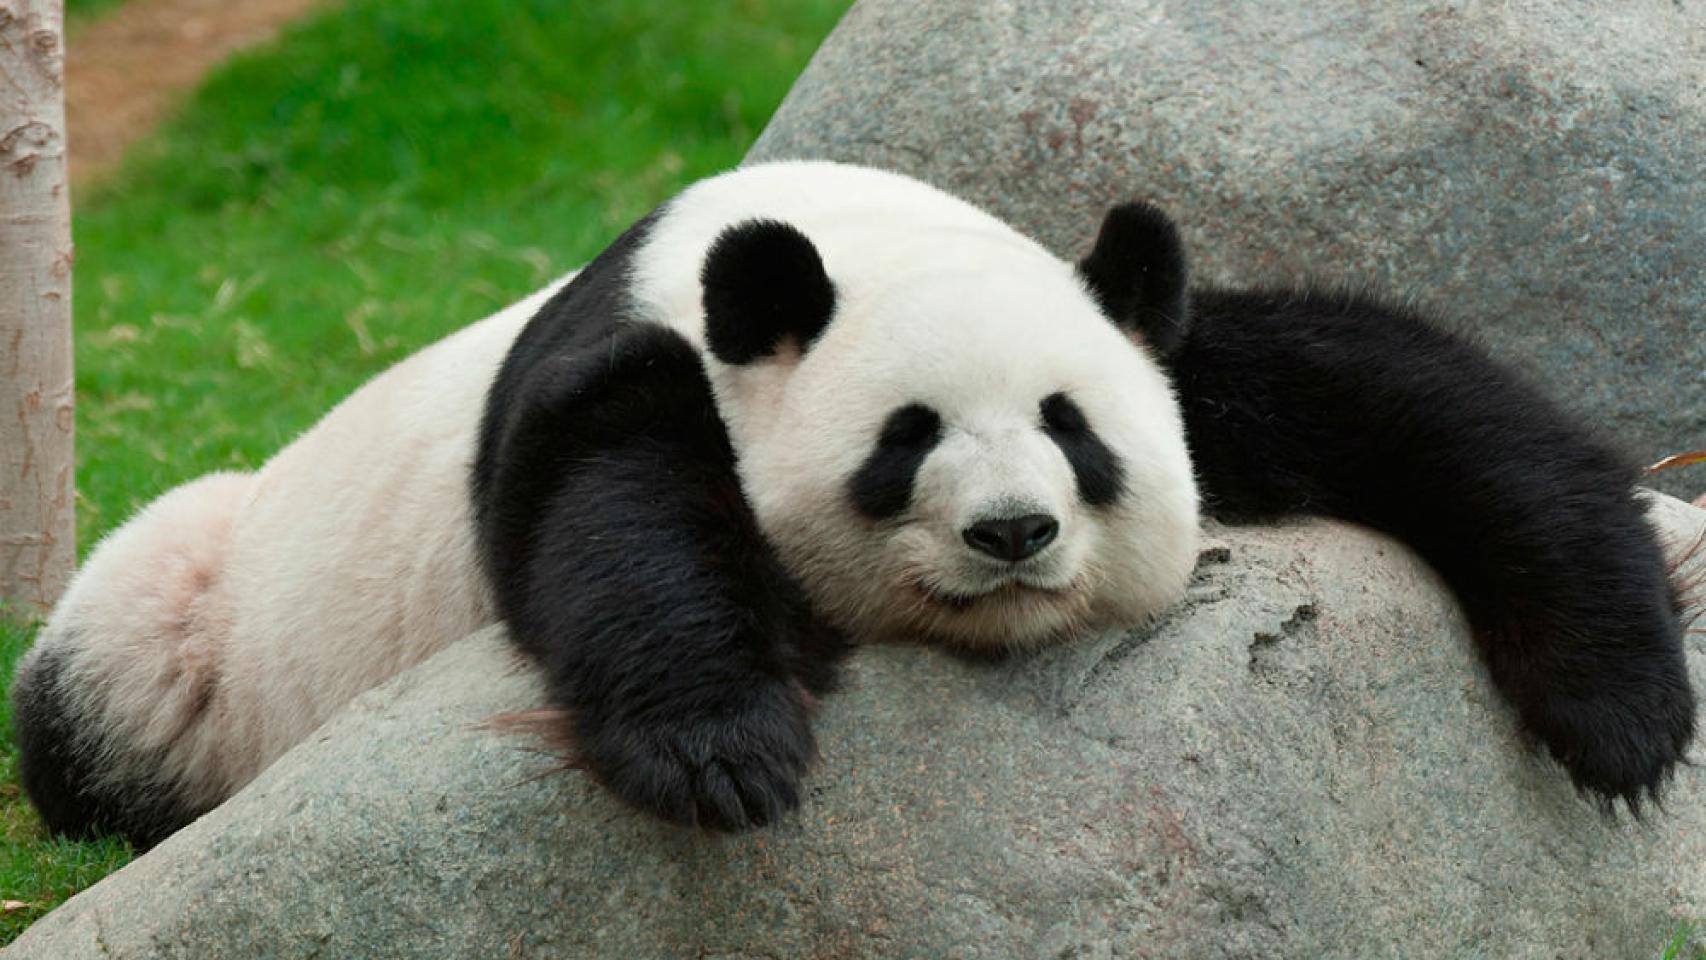 Javar Jasti Xxx Video S - El oso panda, un animal precioso que ya no estÃ¡ en peligro de extinciÃ³n